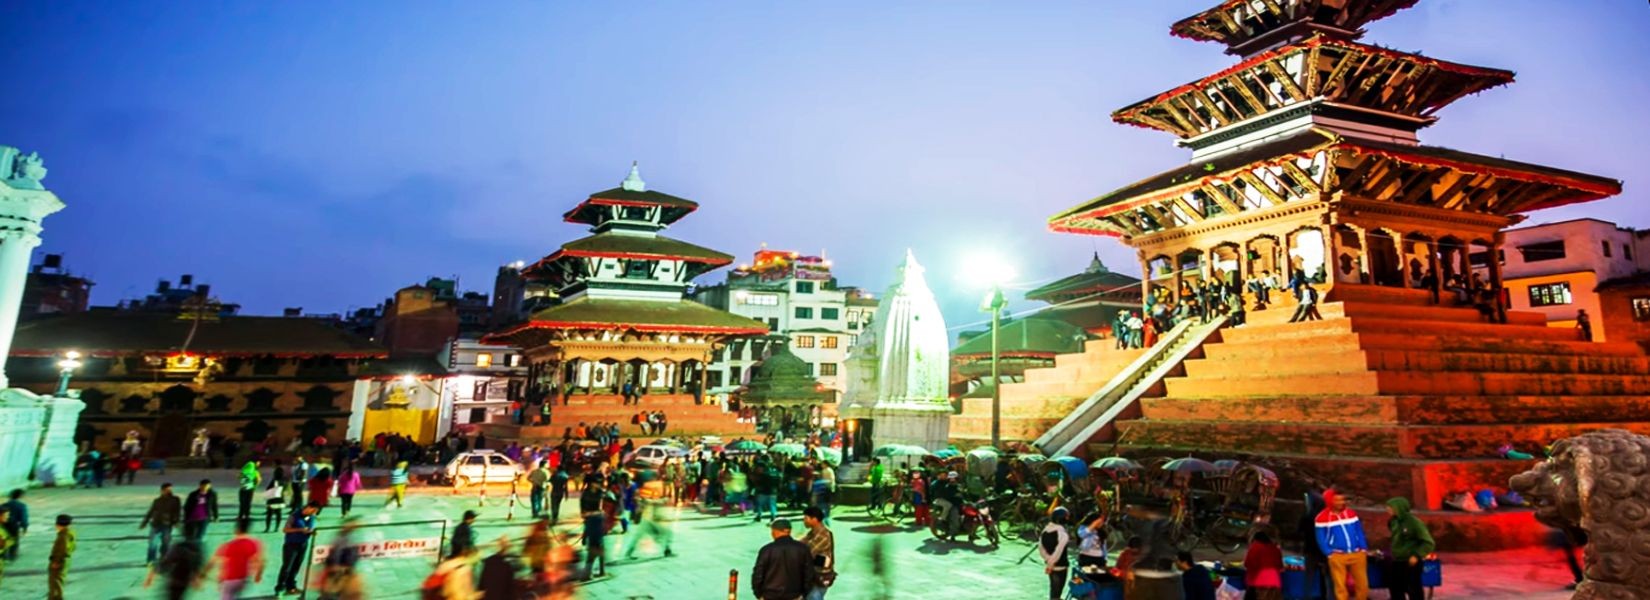 Kathmandu, cultural Kathmandu, kathmandu durbar square